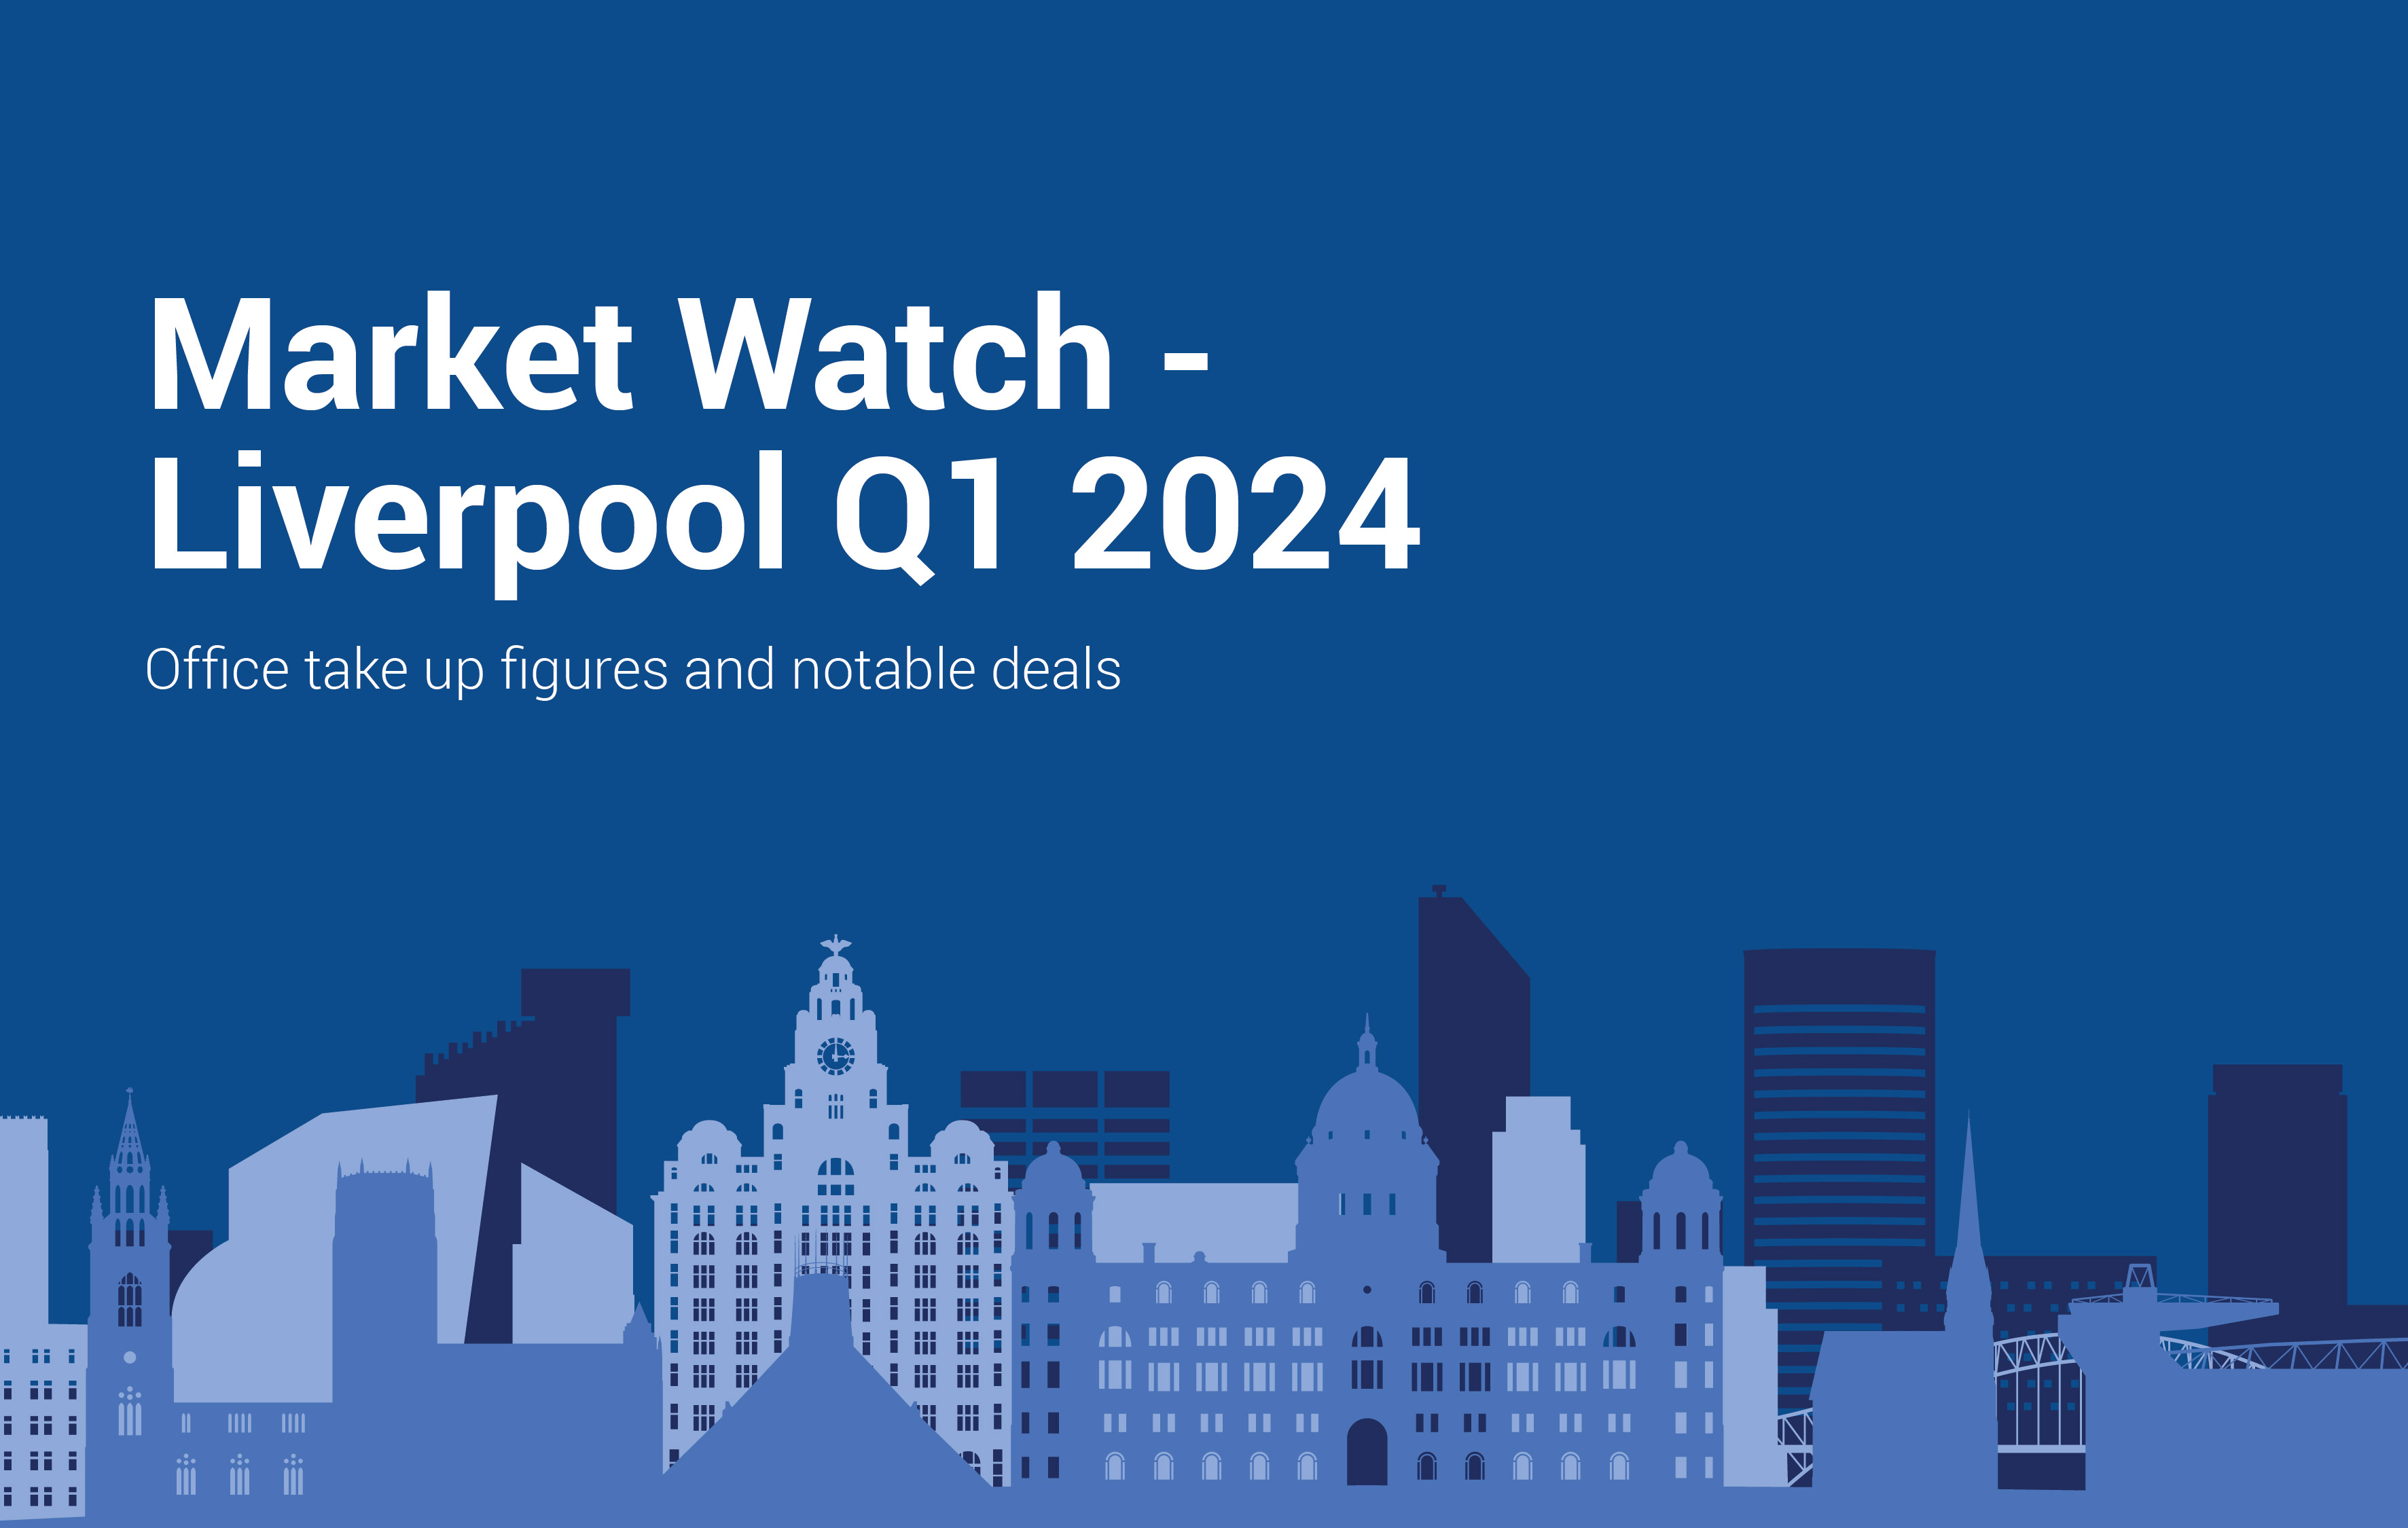 Liverpool market watch Q1 24